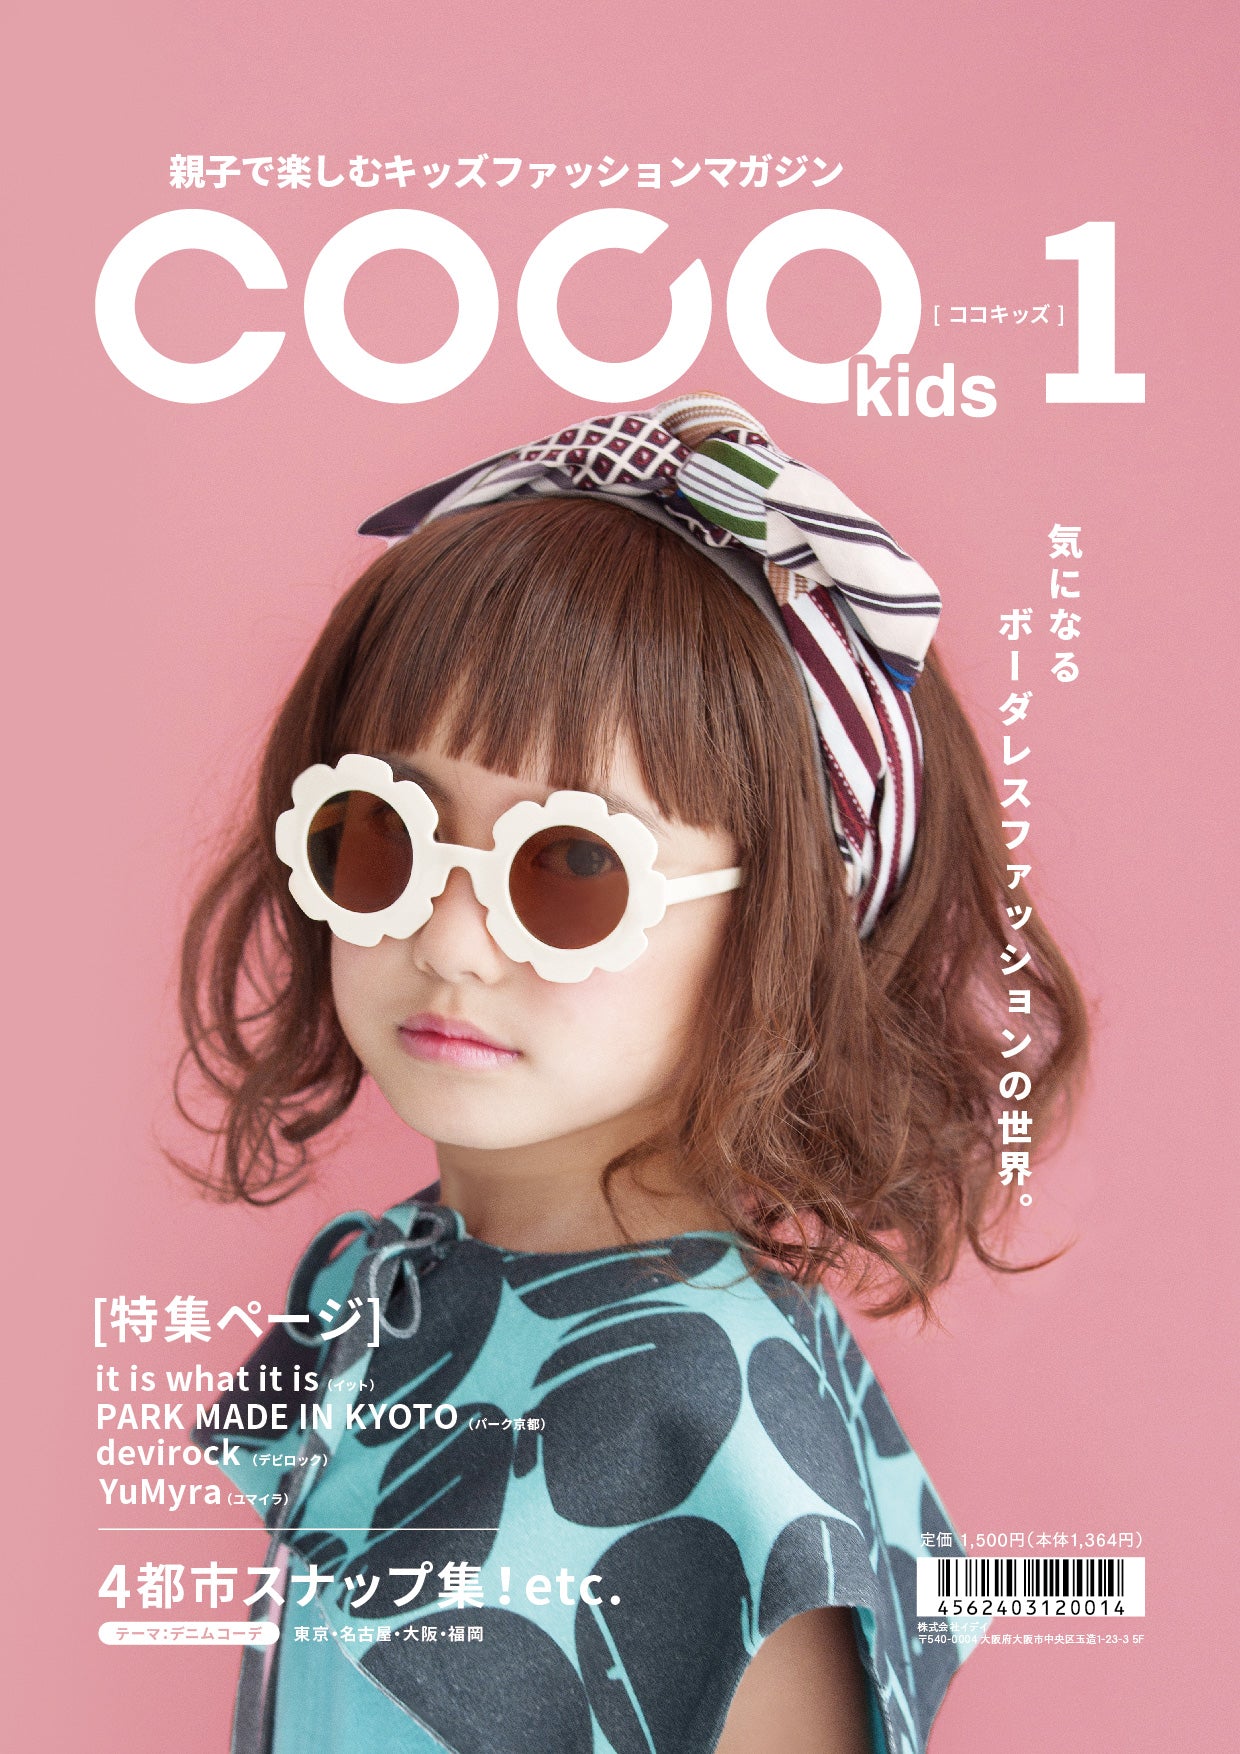 親子で楽しむキッズファッションマガジン COCOkids vol.1（ココキッズ）